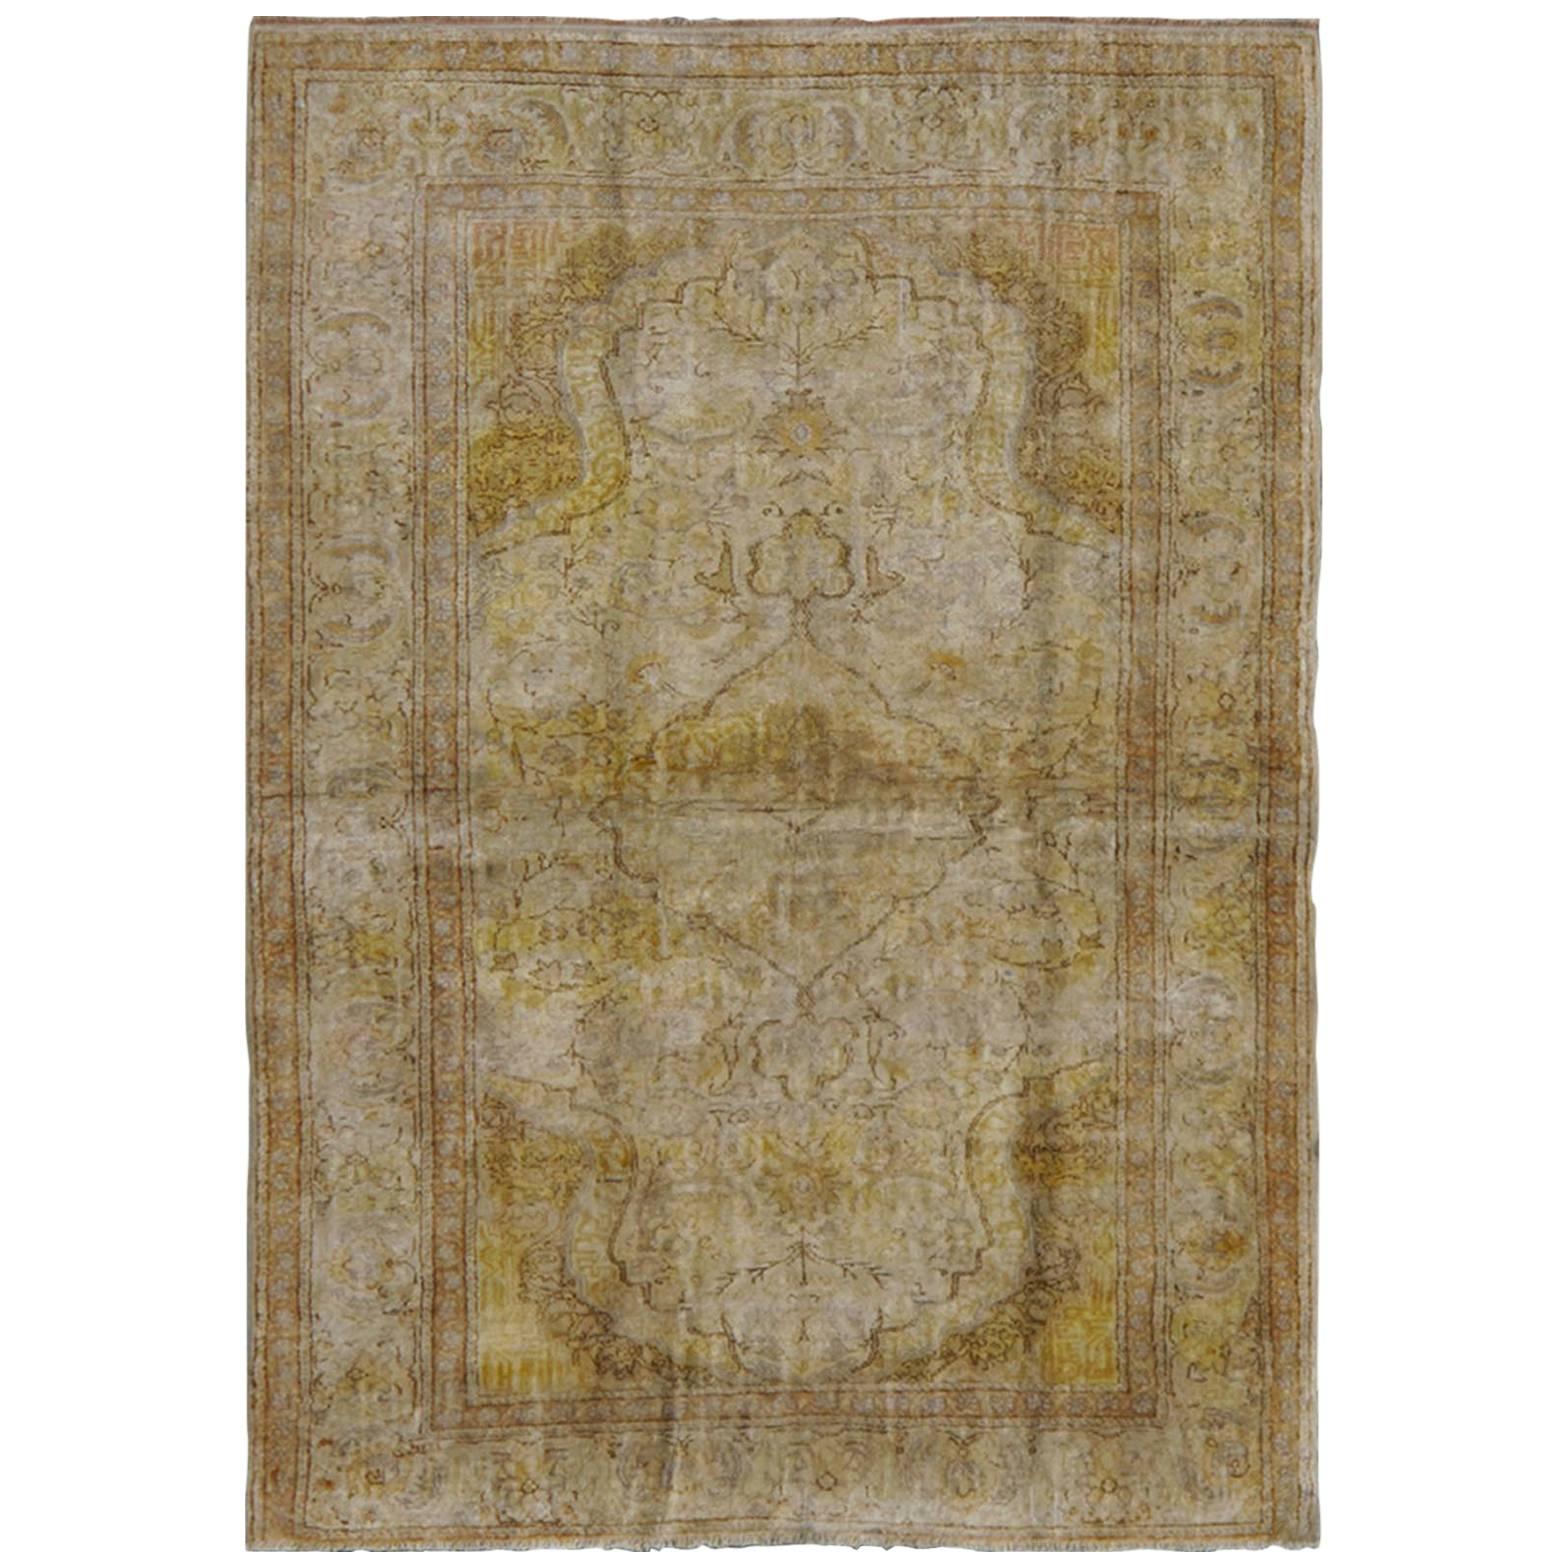 Türkischer Sivas-Teppich aus Seide in den Farben Elfenbein, Braun und Gelb